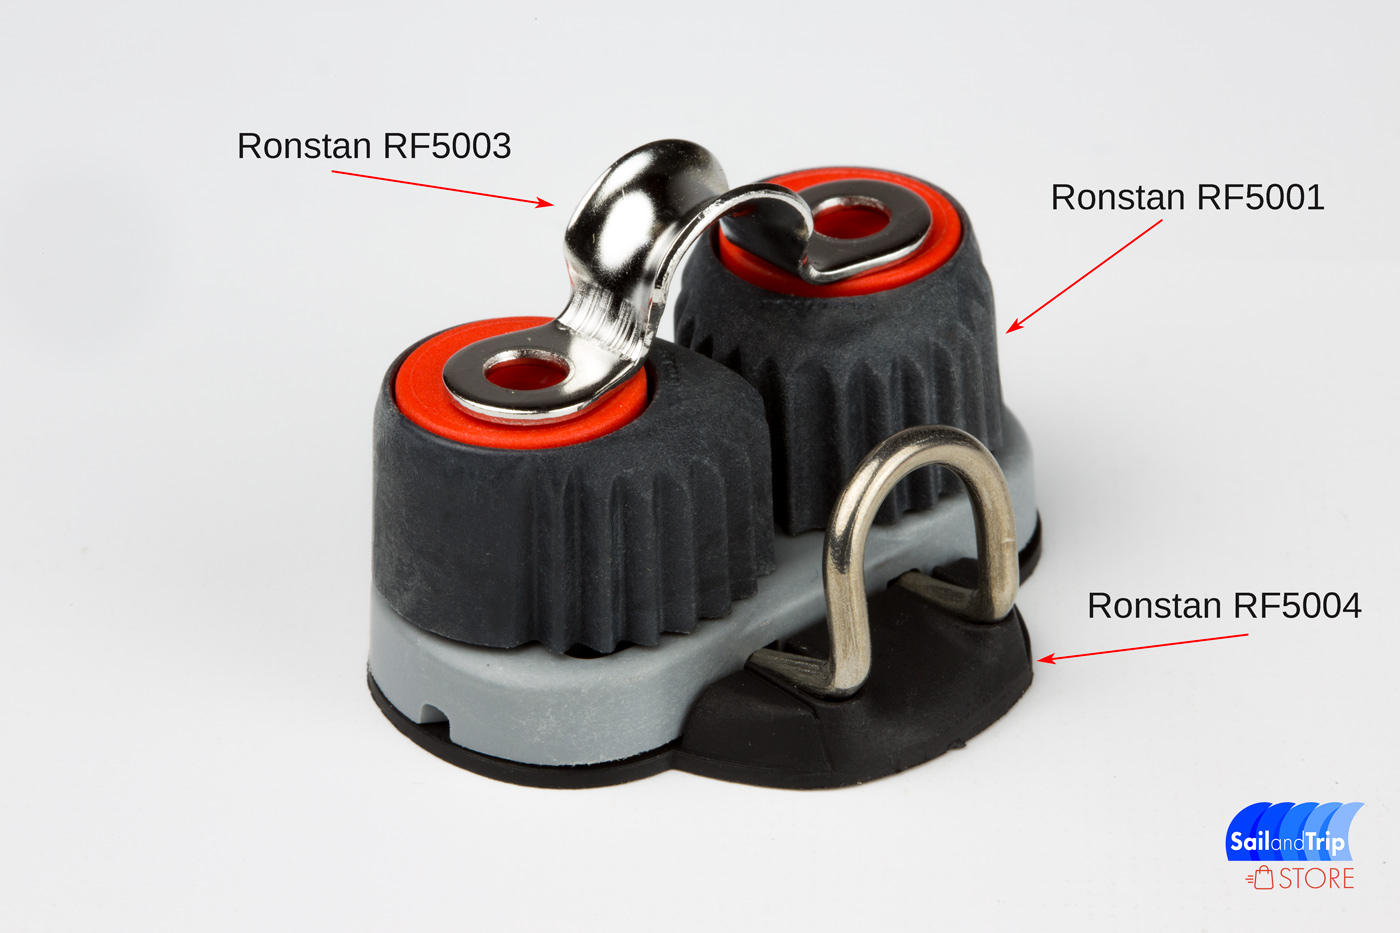 Accesorios Ronstan RF5001